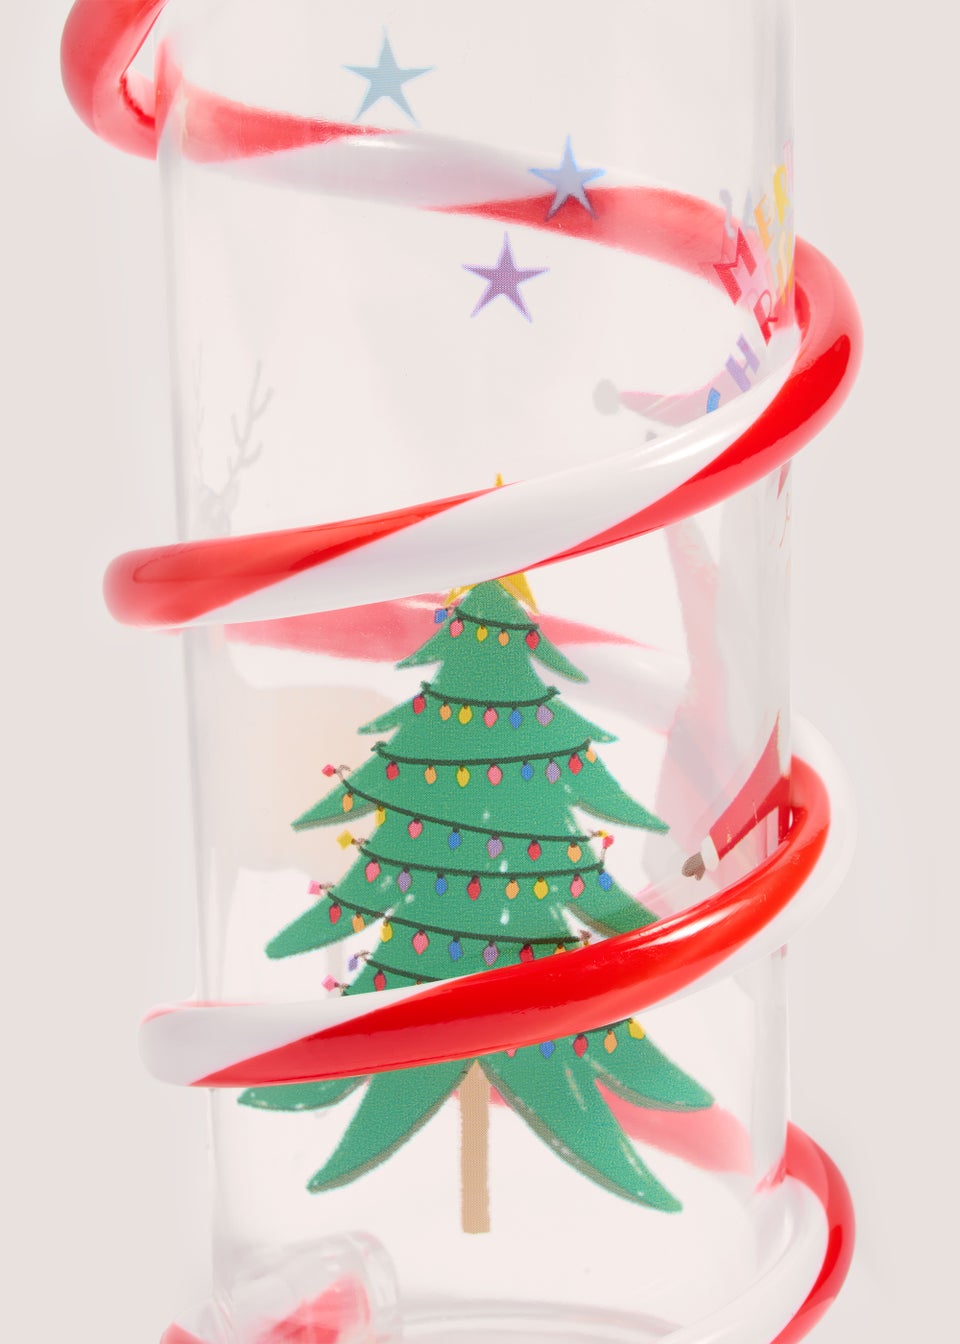 Kids Christmas Cup with Twist Straw (16cm x 6cm)